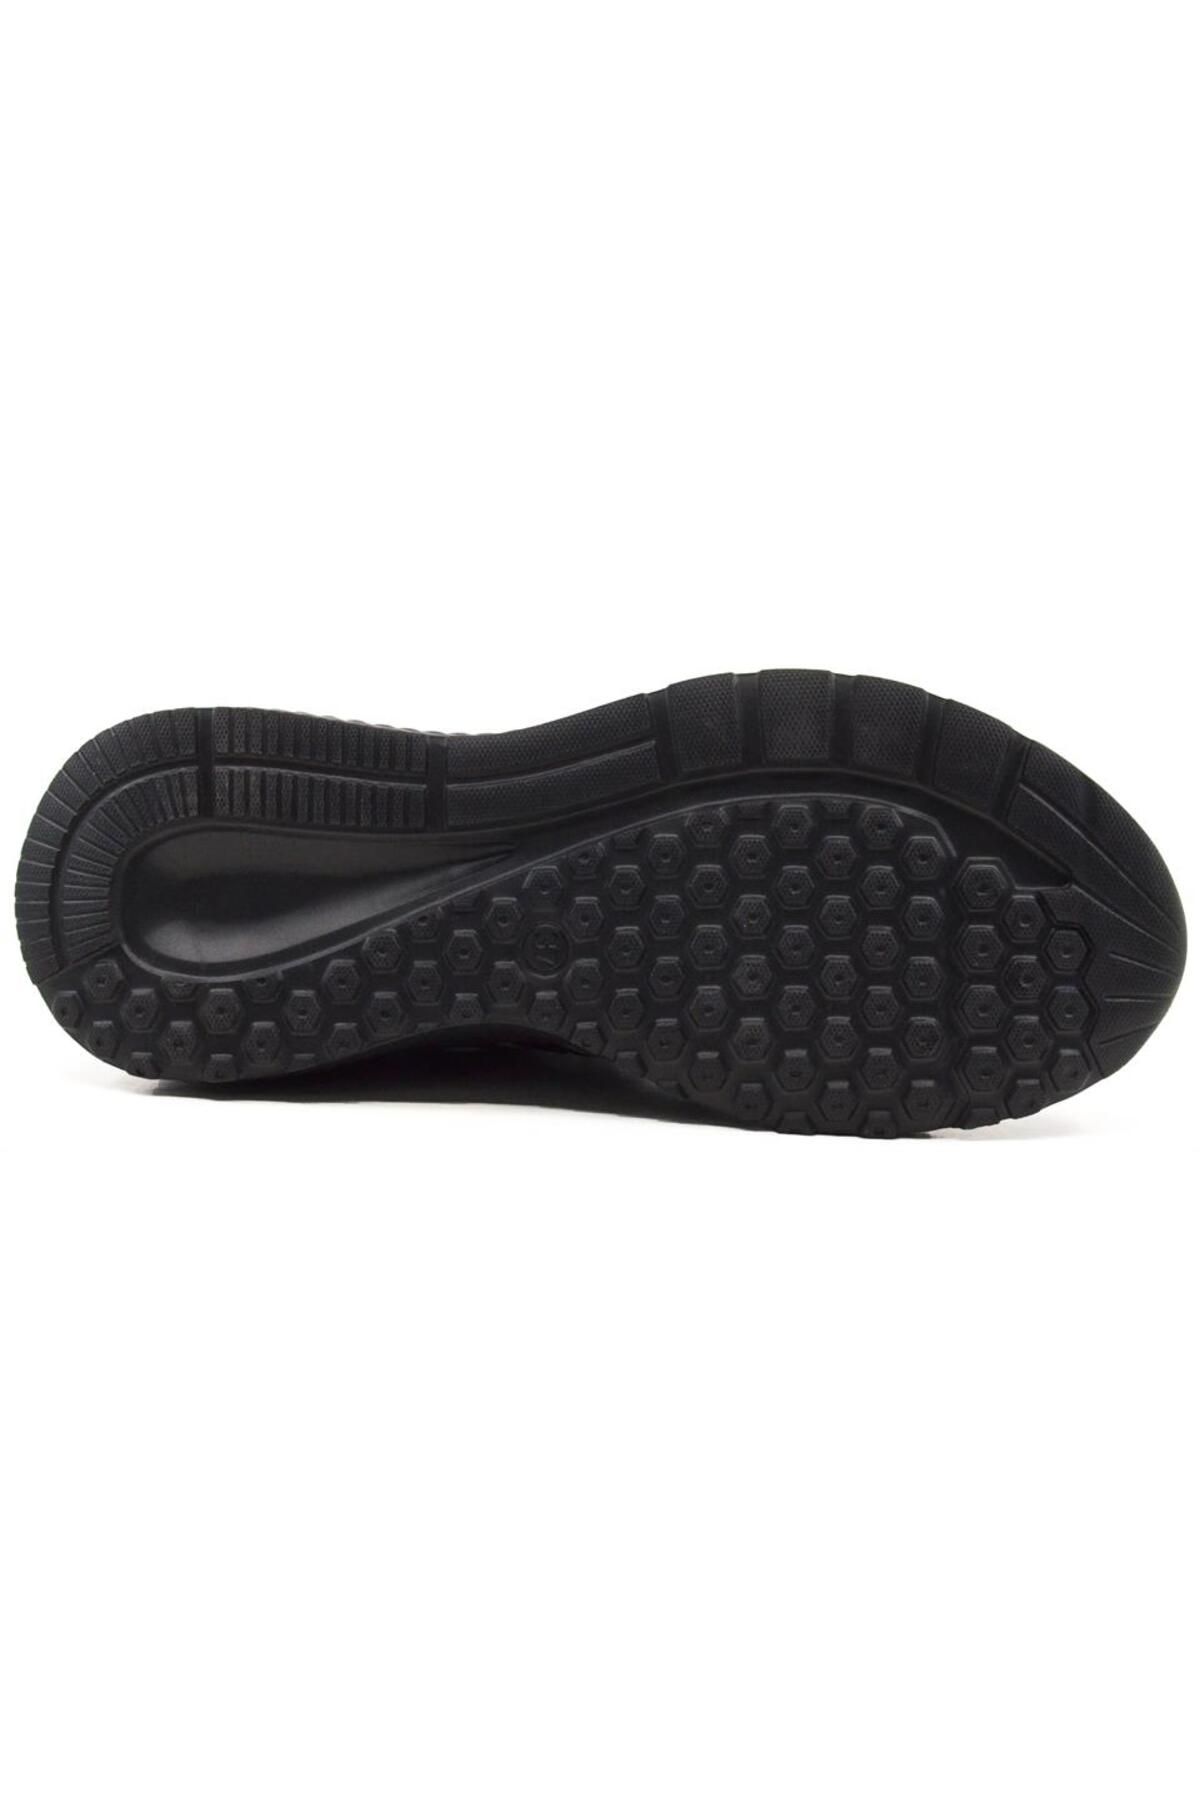 KİNG PAOLO King Paolo D5094 Bixi Spor - Siyah - Kadın Ayakkabı,örgü Yürüyüş Ayakkabısı